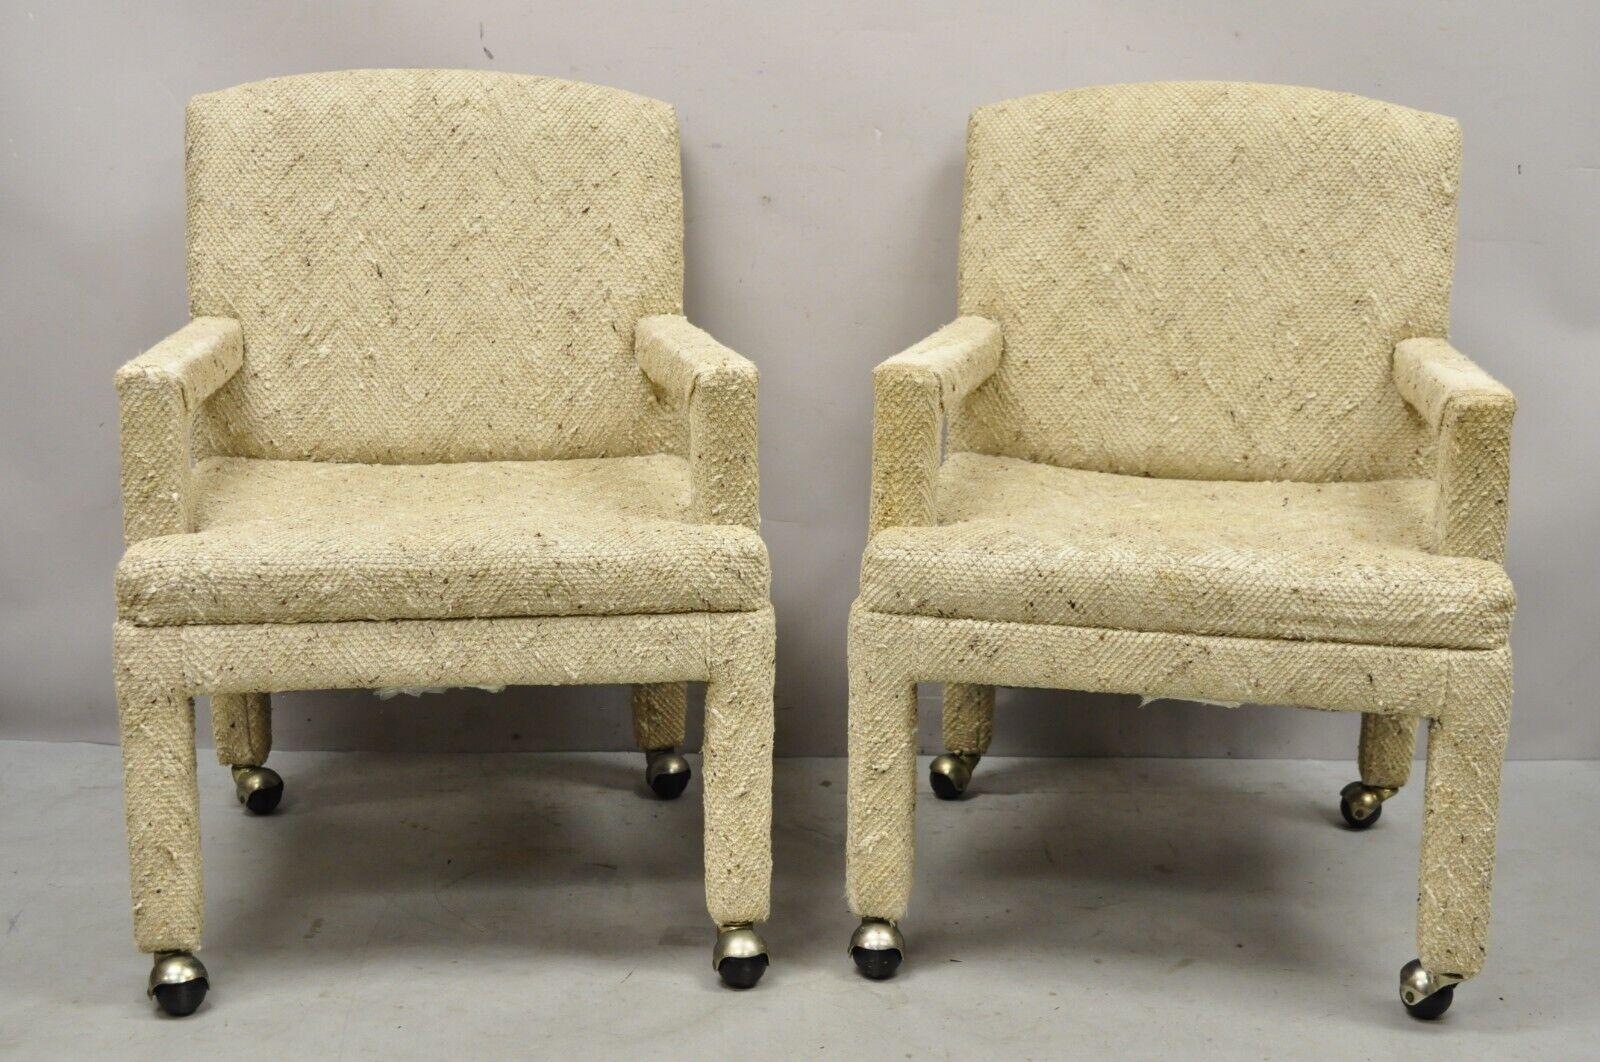 Pair Vintage Bassett Furniture voll gepolstert parson Stil Club Lounge Stühle. Der Artikel ist mit Rollen ausgestattet, voll gepolstert mit beigefarbenem genopptem Wollstoff, Original Label, sehr schönes Vintage-Paar, klare modernistische Linien.